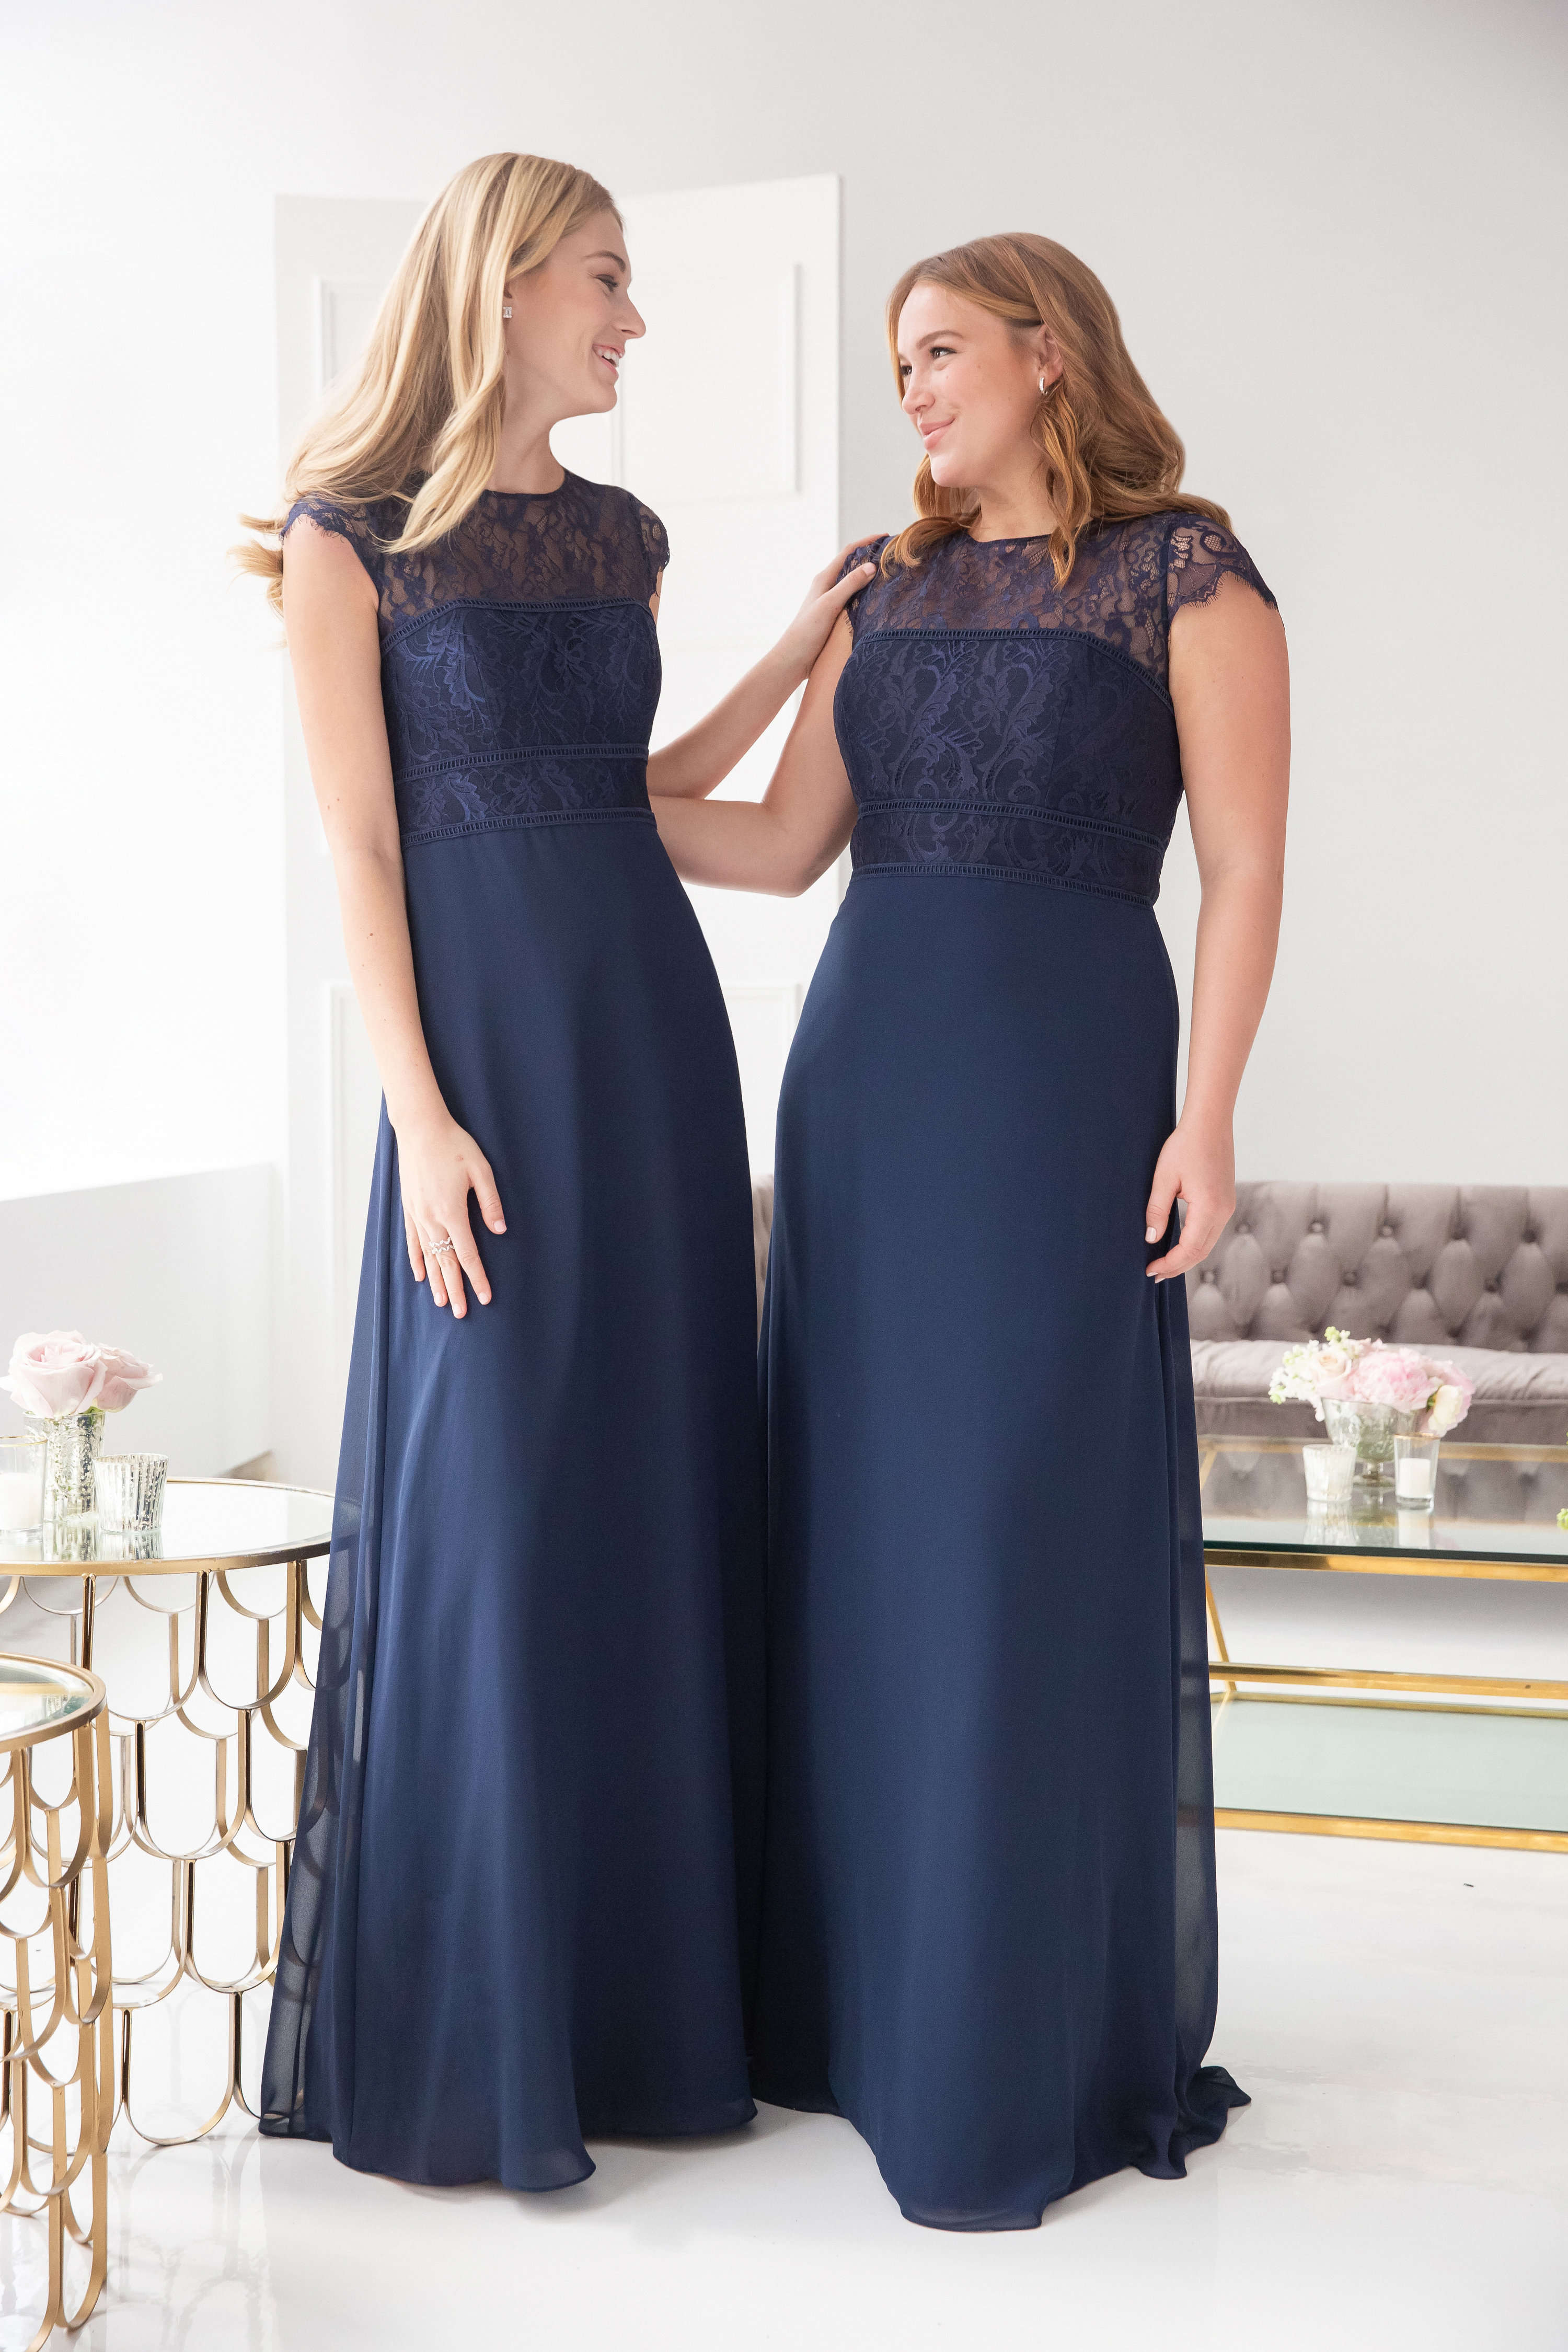 bridesmaid gown design